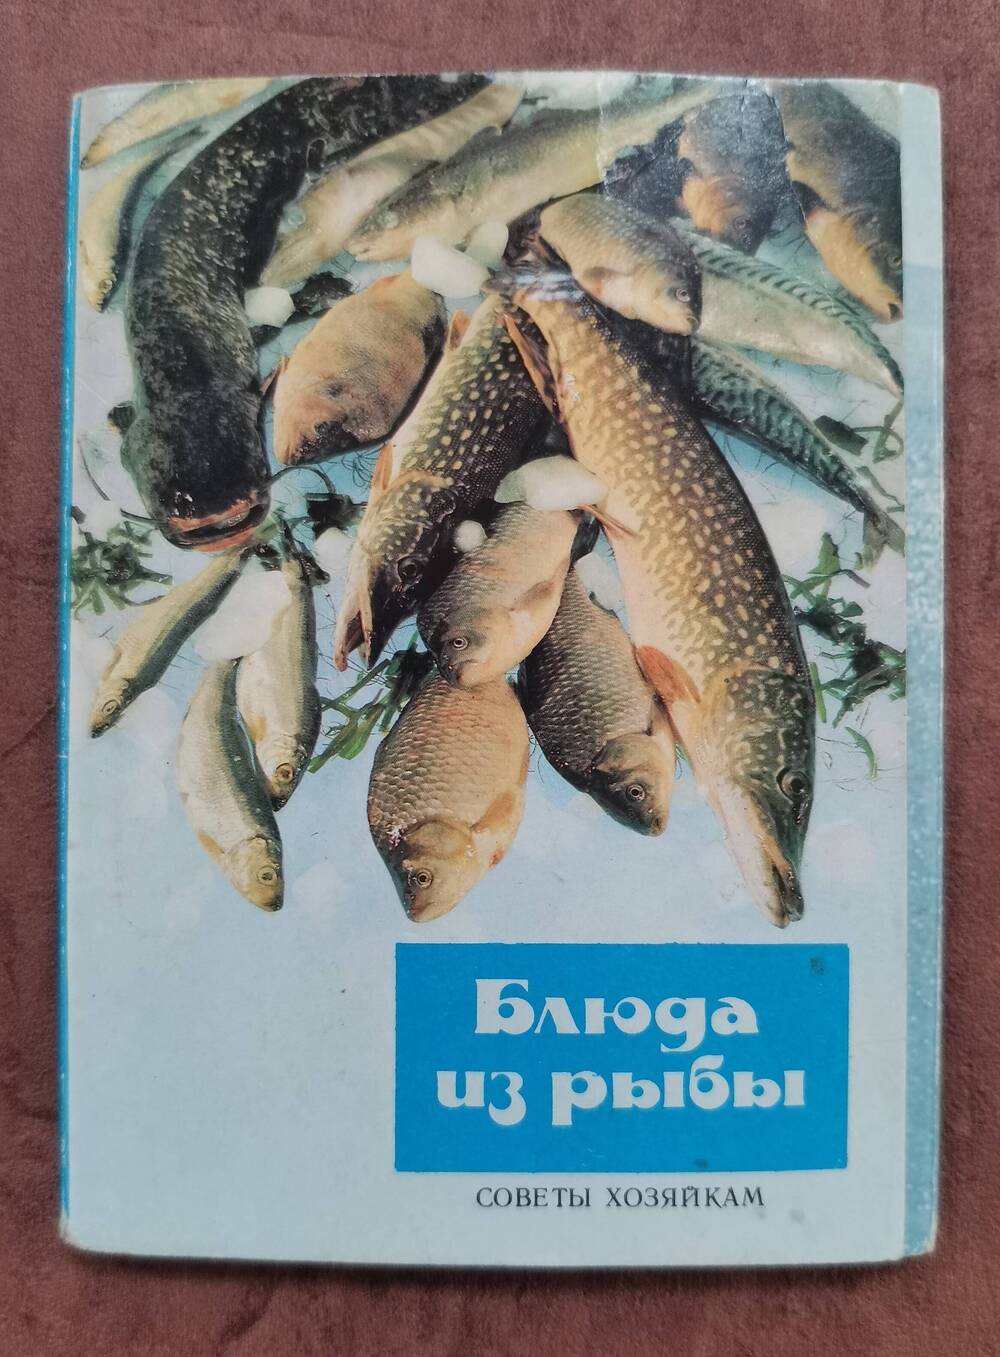 Открытка «Коктейль с креветками». Из комплекта открыток «Советы хозяйкам. Блюда из рыбы».